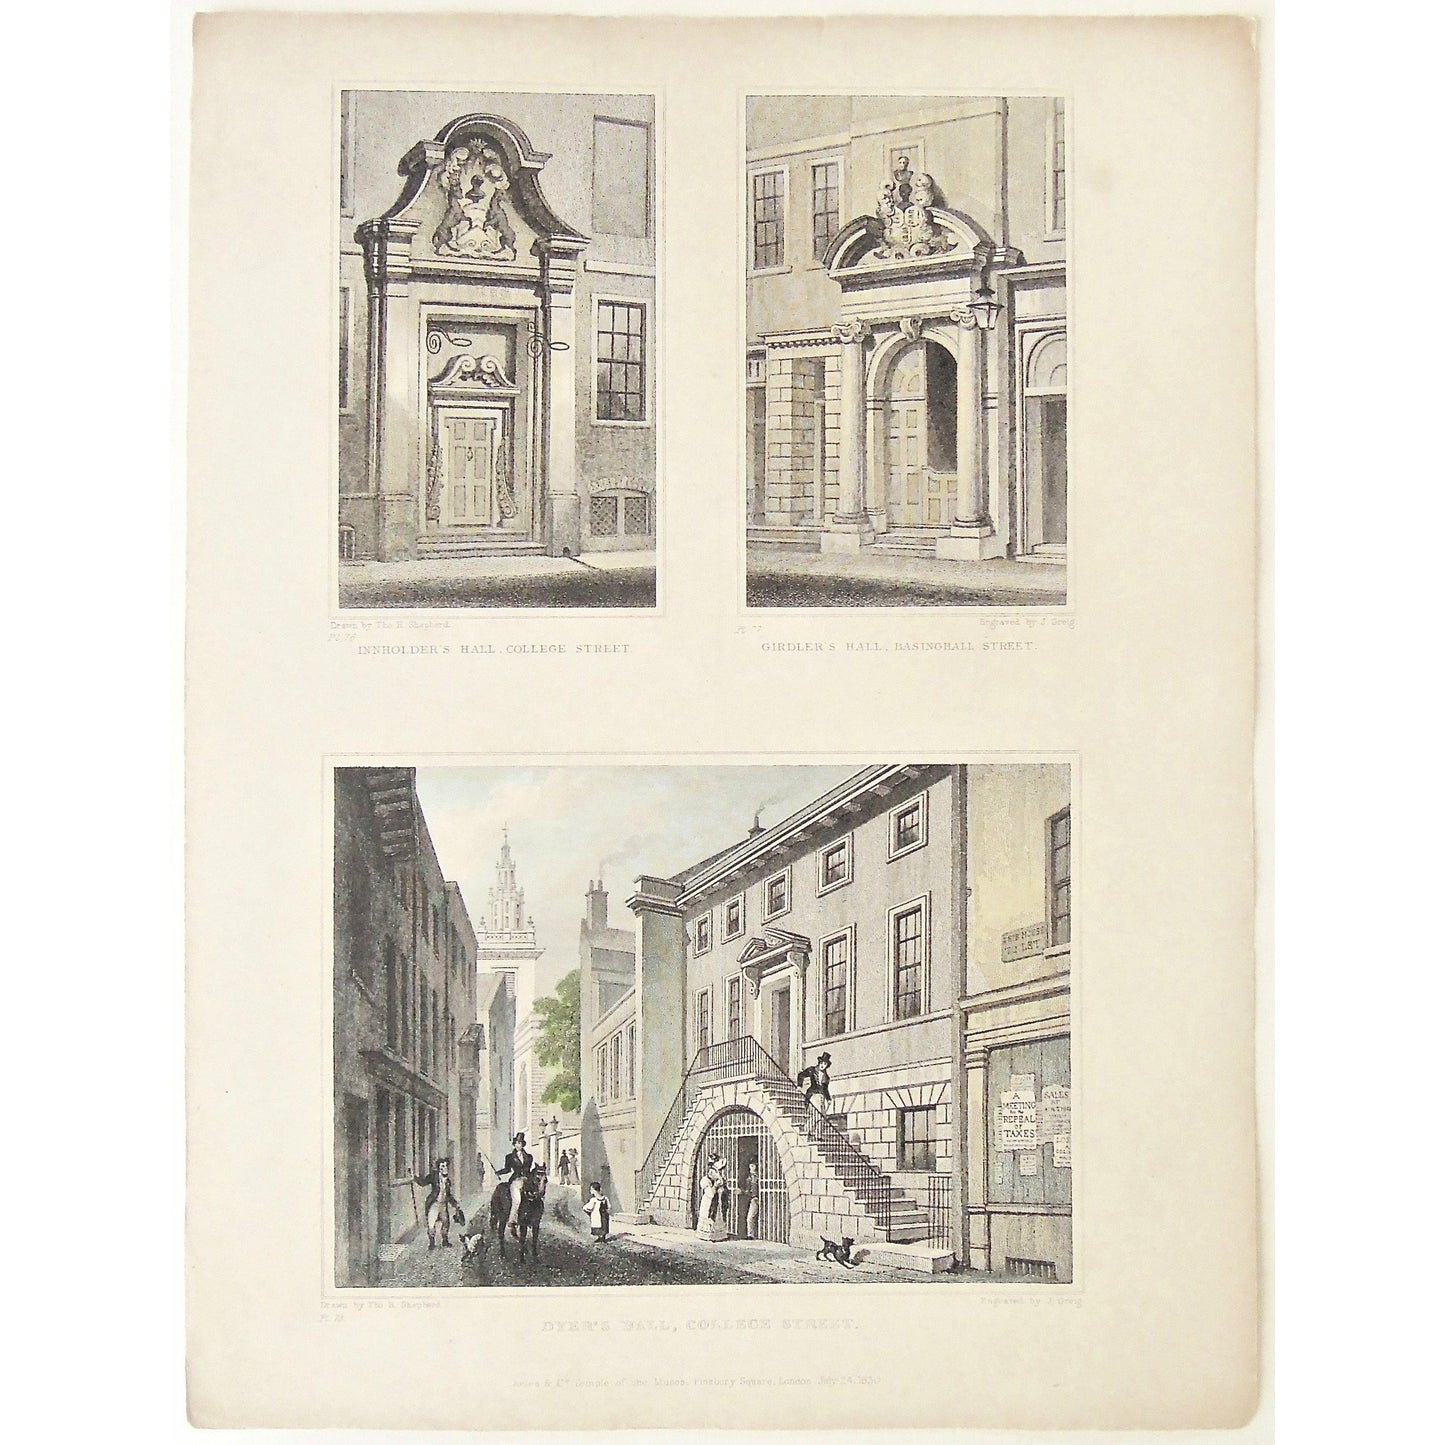 Innholder's Hall, College Street. / Girdler's Hall, Basinghall Street. / Dyer's Hall, College Street.  (S2-43)